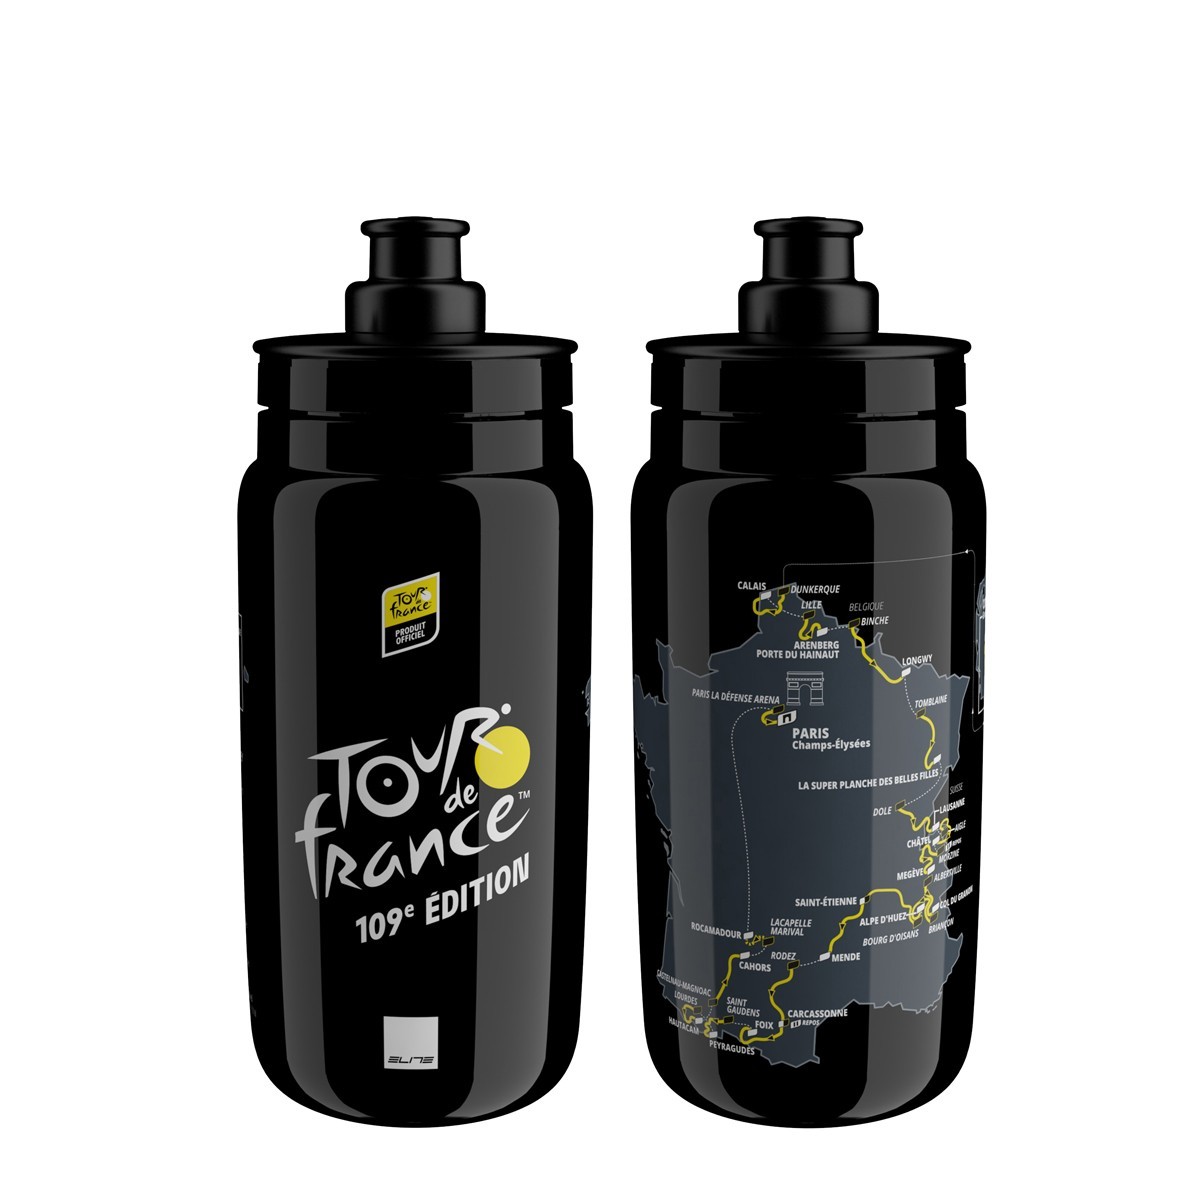 ELITE bottle FLY Teams 2022 Tour de France Black Map 550ml